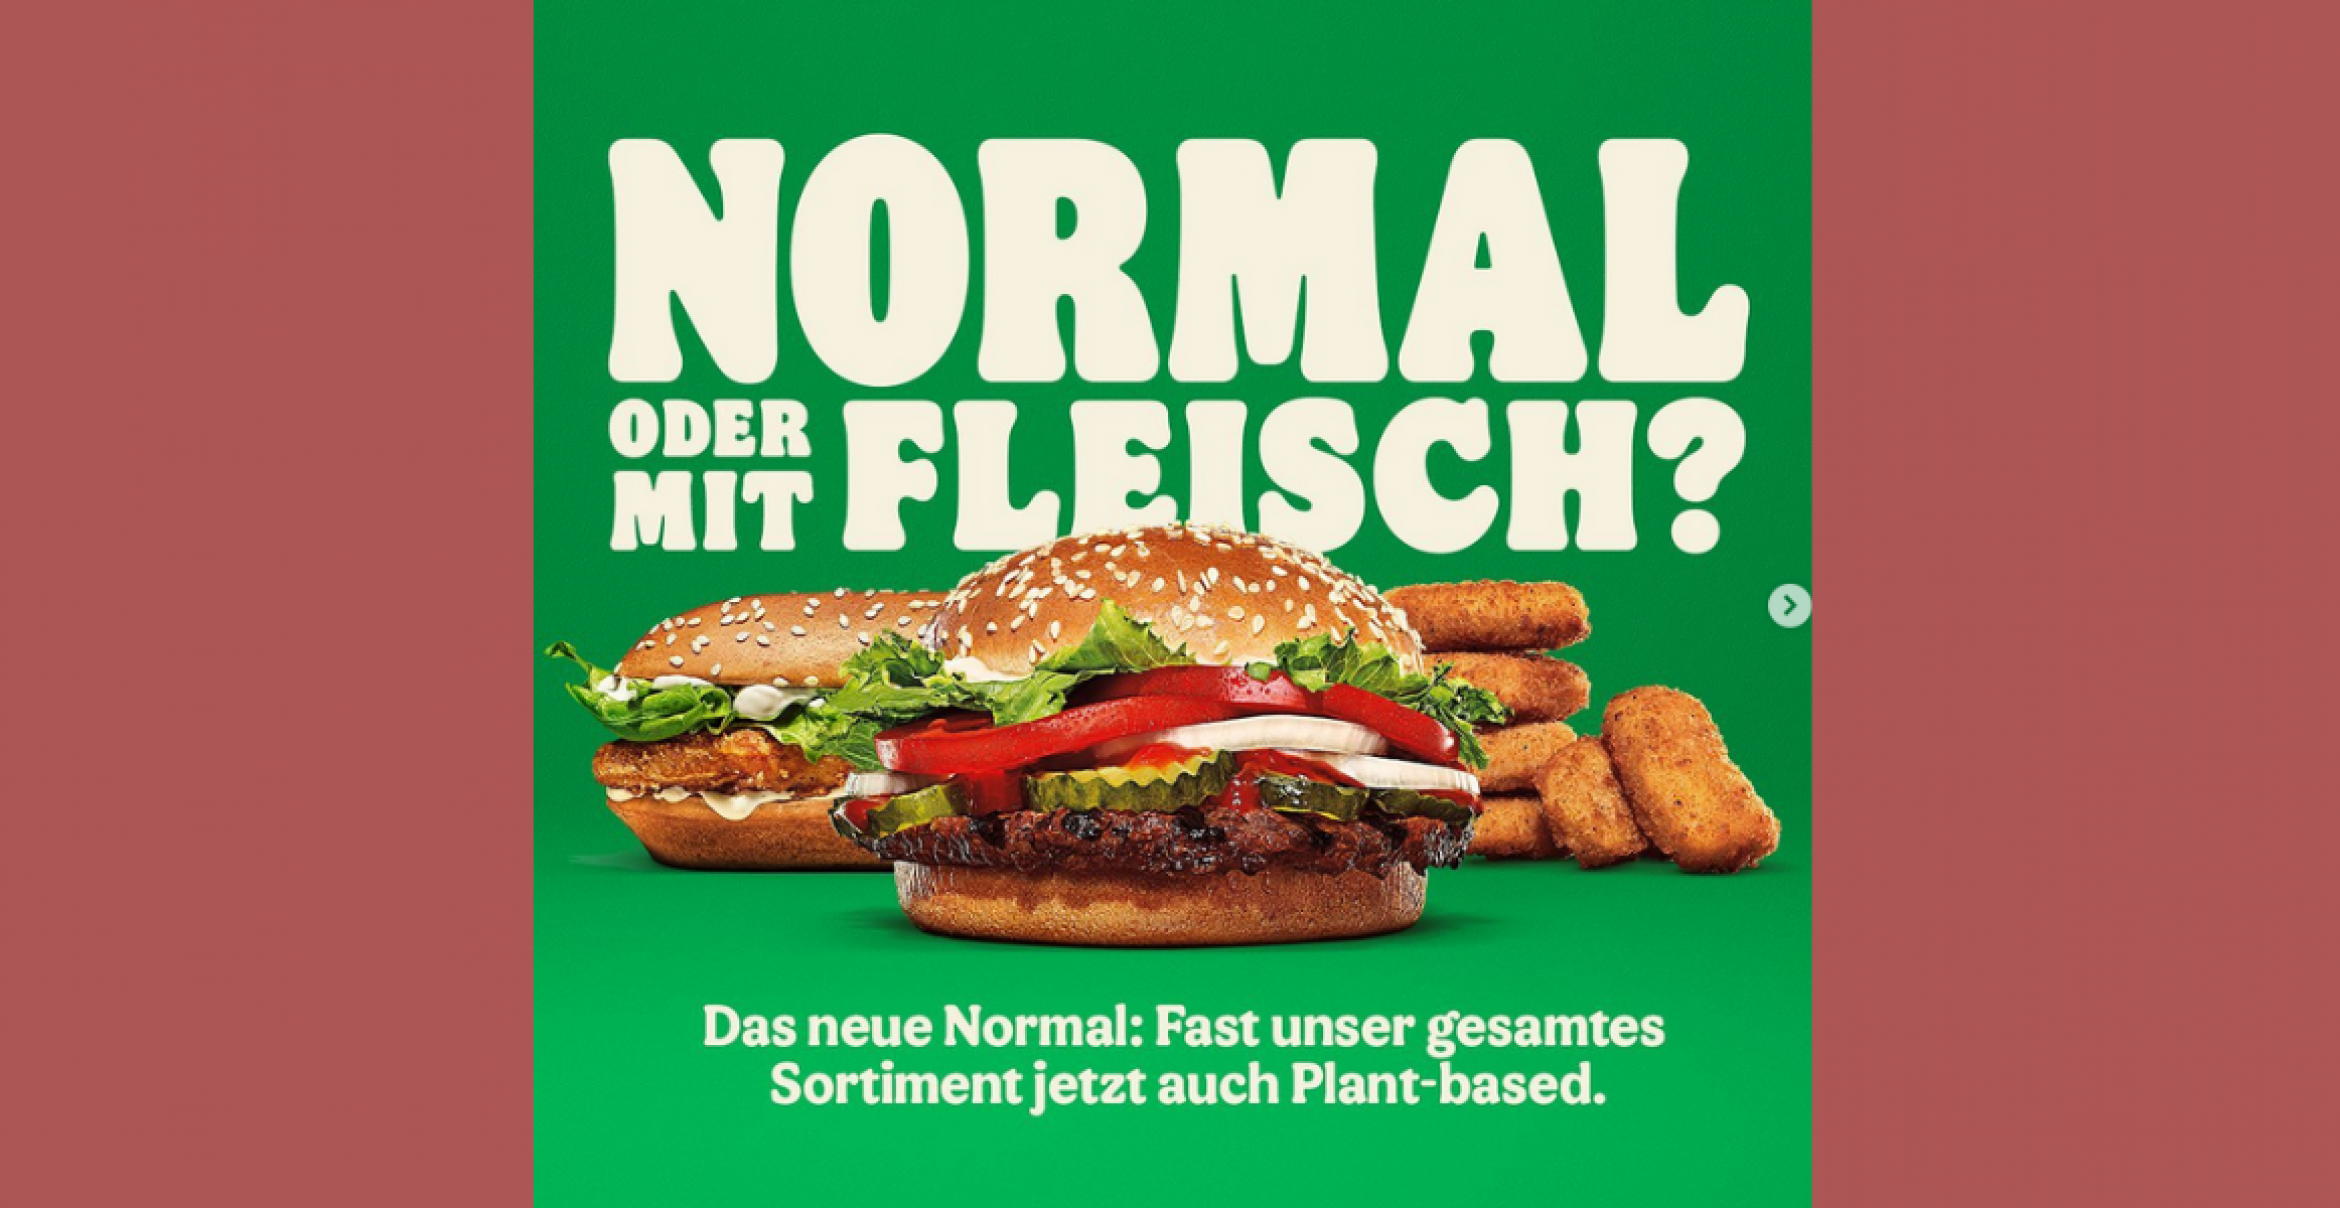 Normal oder mit Fleisch? Burger King mit neuer Kampagne